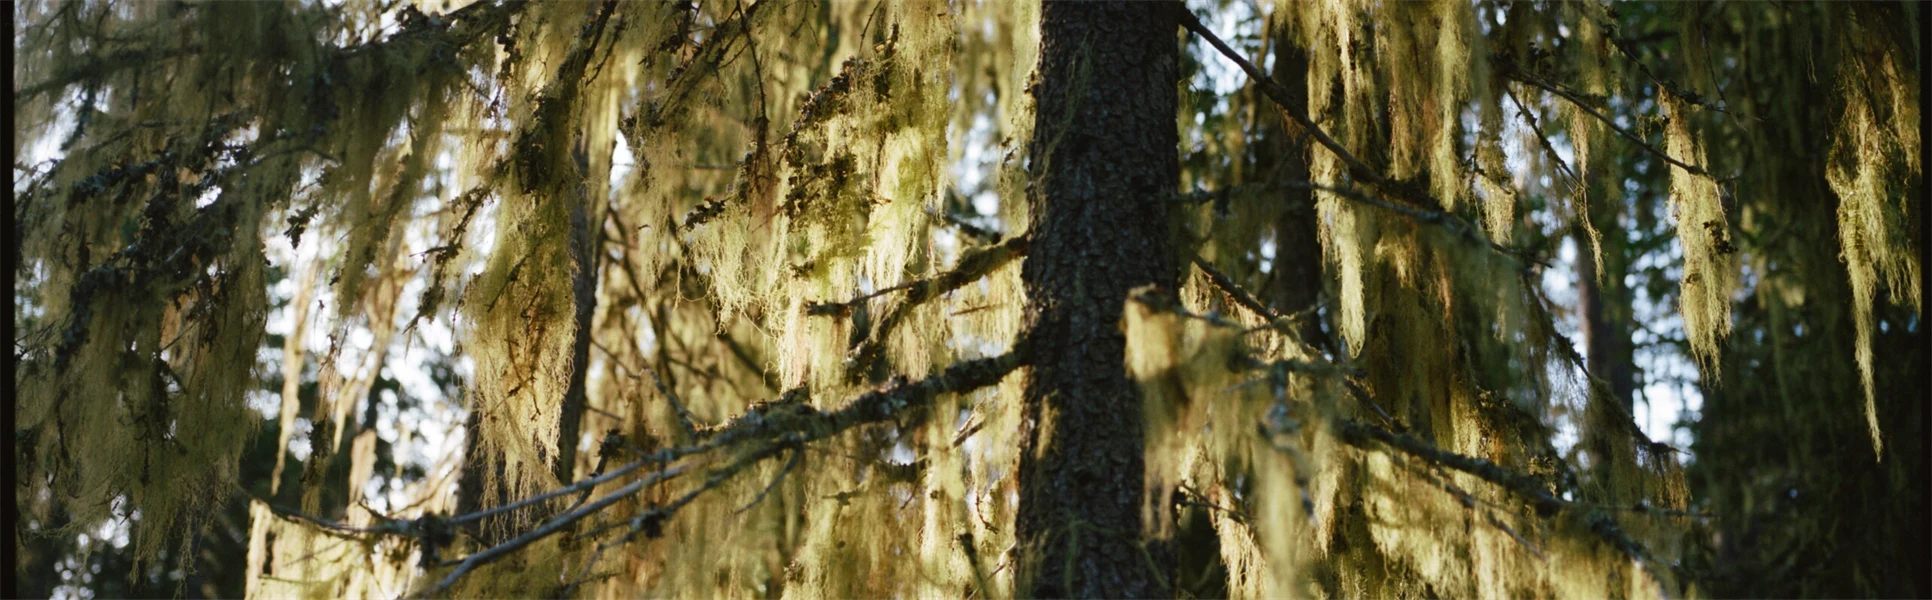 Ett träd med hängande grenar